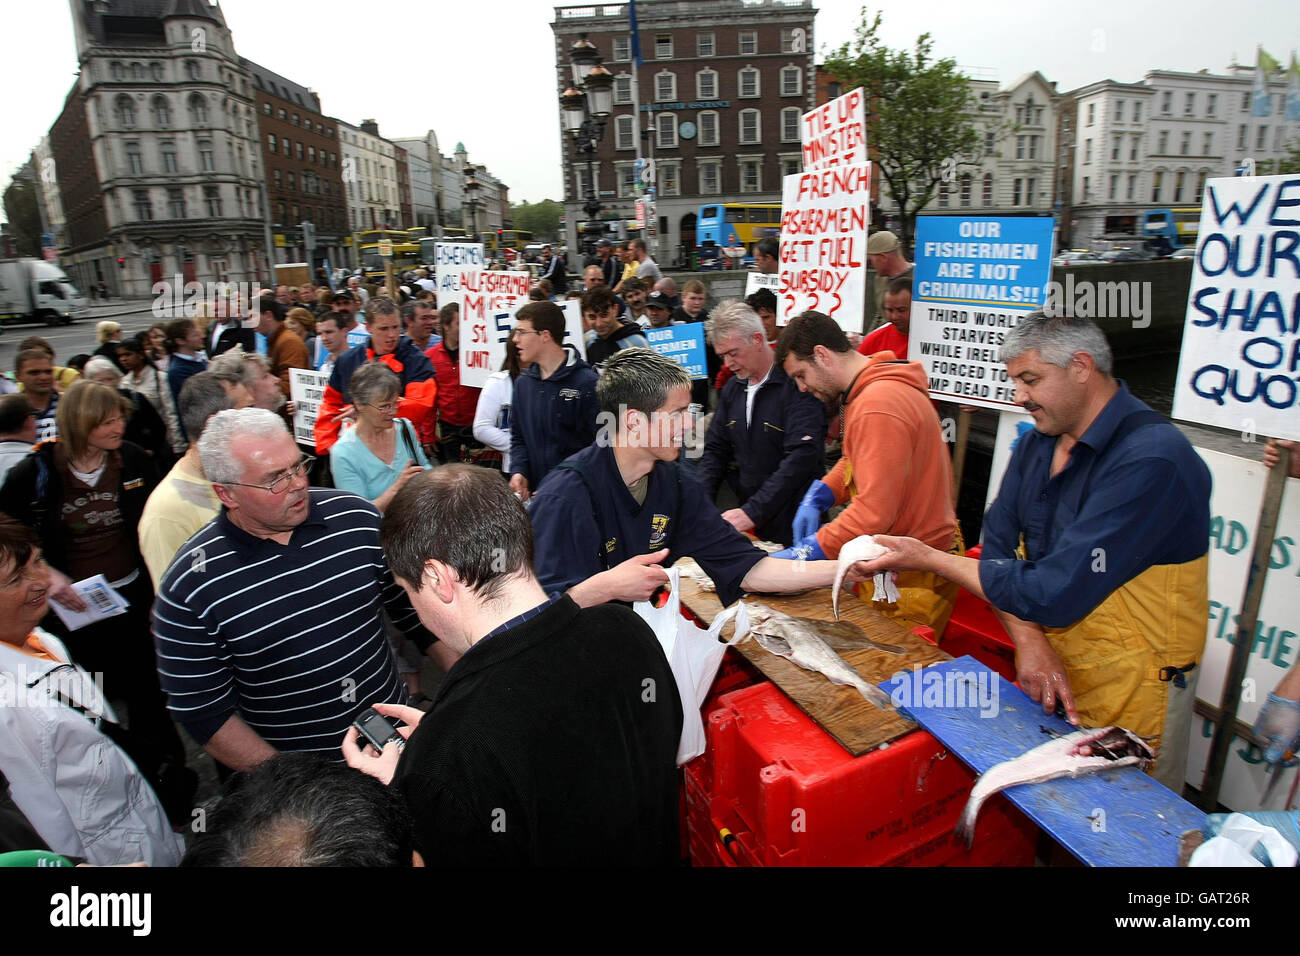 Les pêcheurs mettent gratuitement du poisson à la disposition du public sur le pont O'Connell de Dublin lors de leur manifestation contre la hausse des coûts du carburant et les restrictions sur leurs activités. Banque D'Images